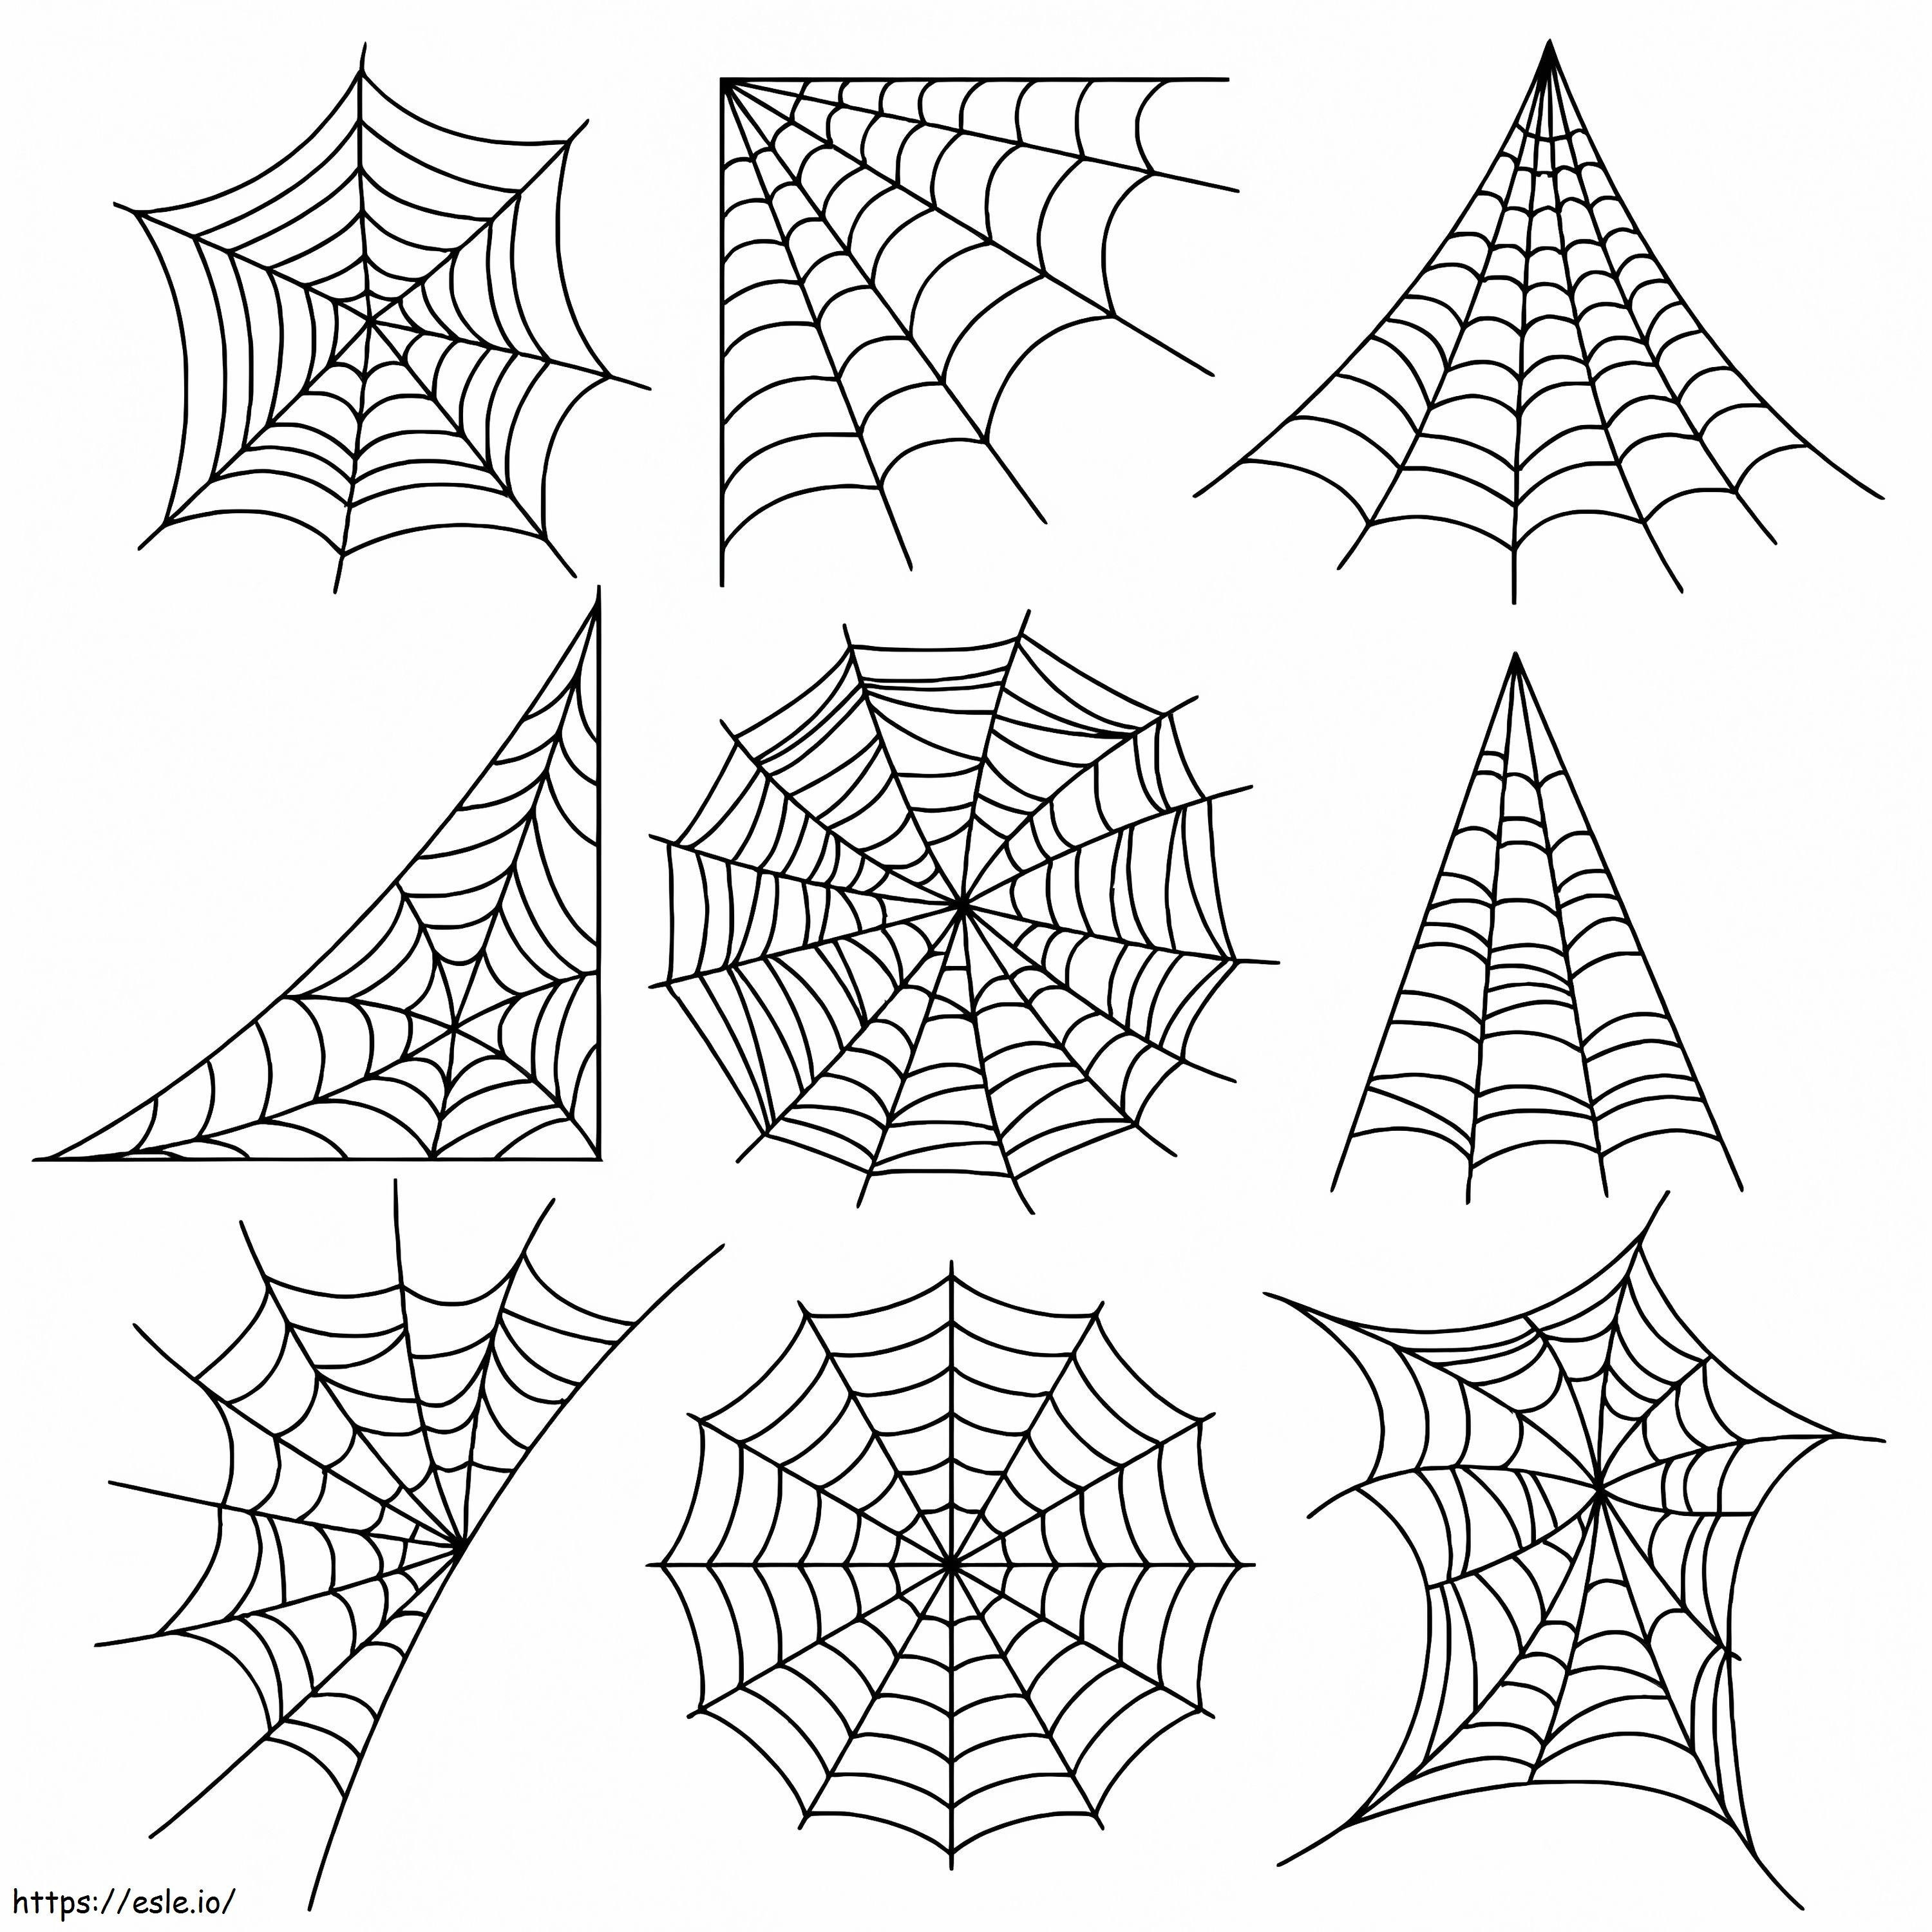 Spinnenweb kleurplaat kleurplaat